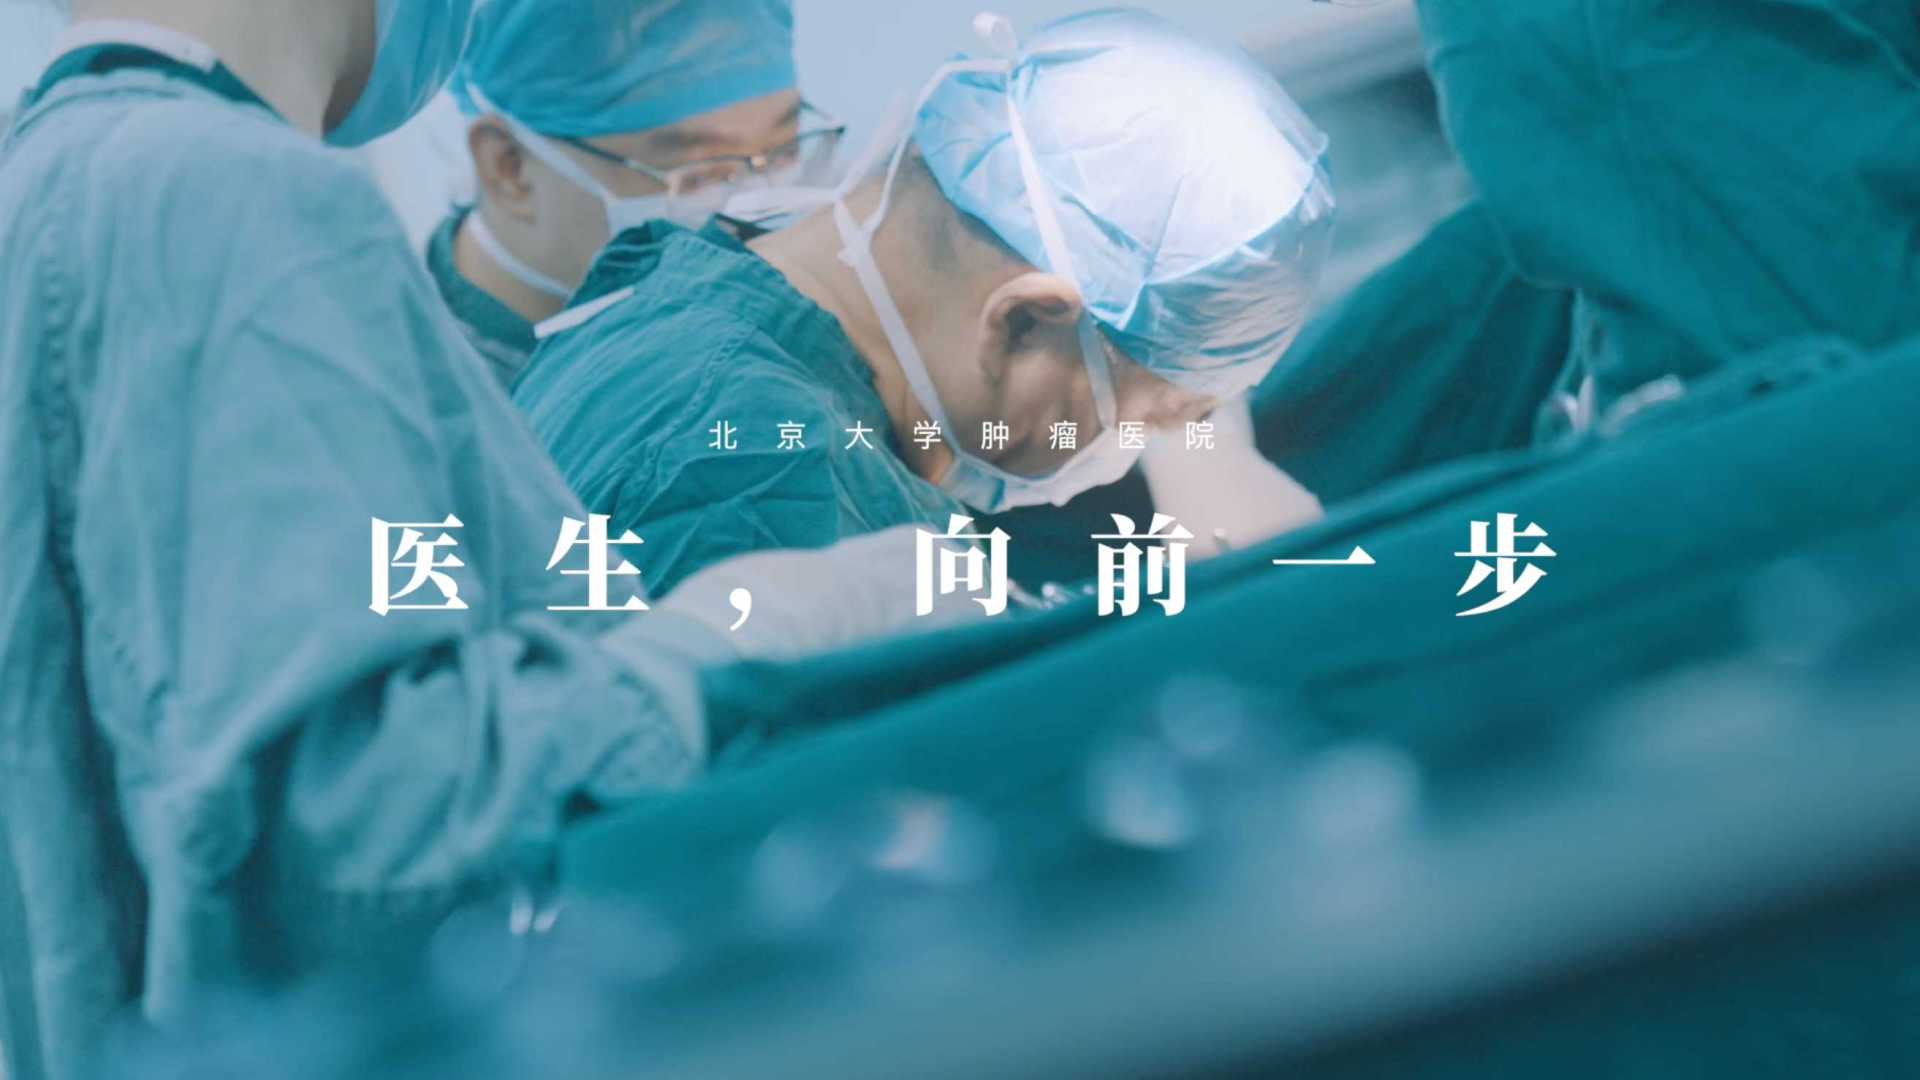 新华社一带一路十周年纪录片《医者，向前一步》 中国医疗如何治愈世界 导演版